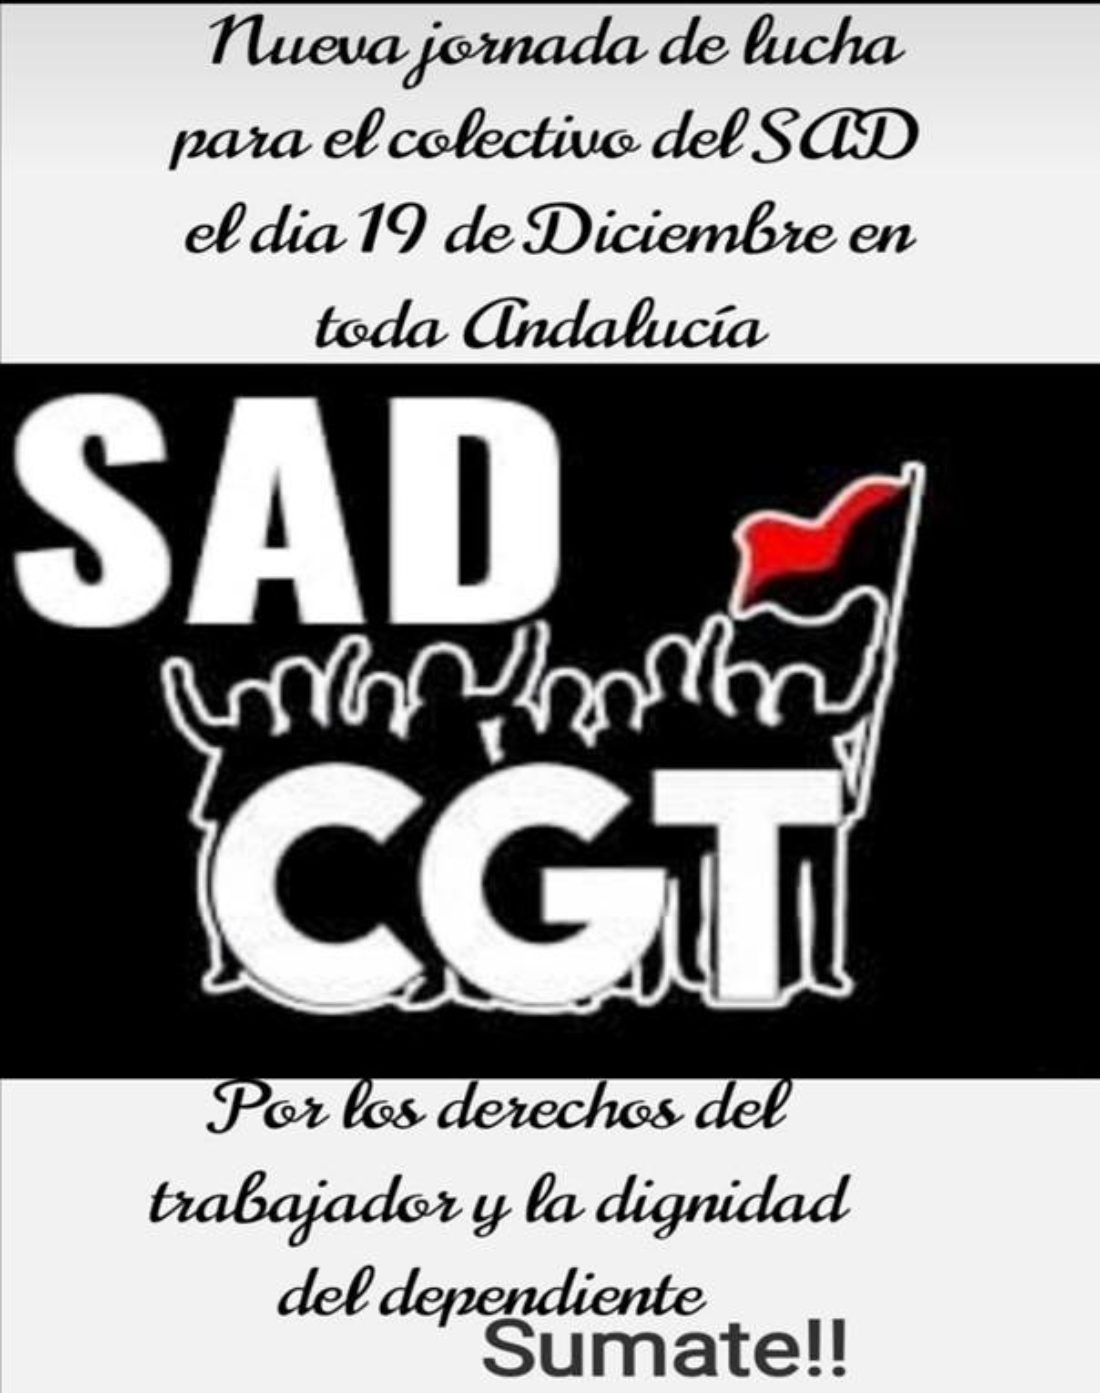 El Servicio de Ayuda a Domicilio en Andalucía vuelve a las plazas el 19 de diciembre